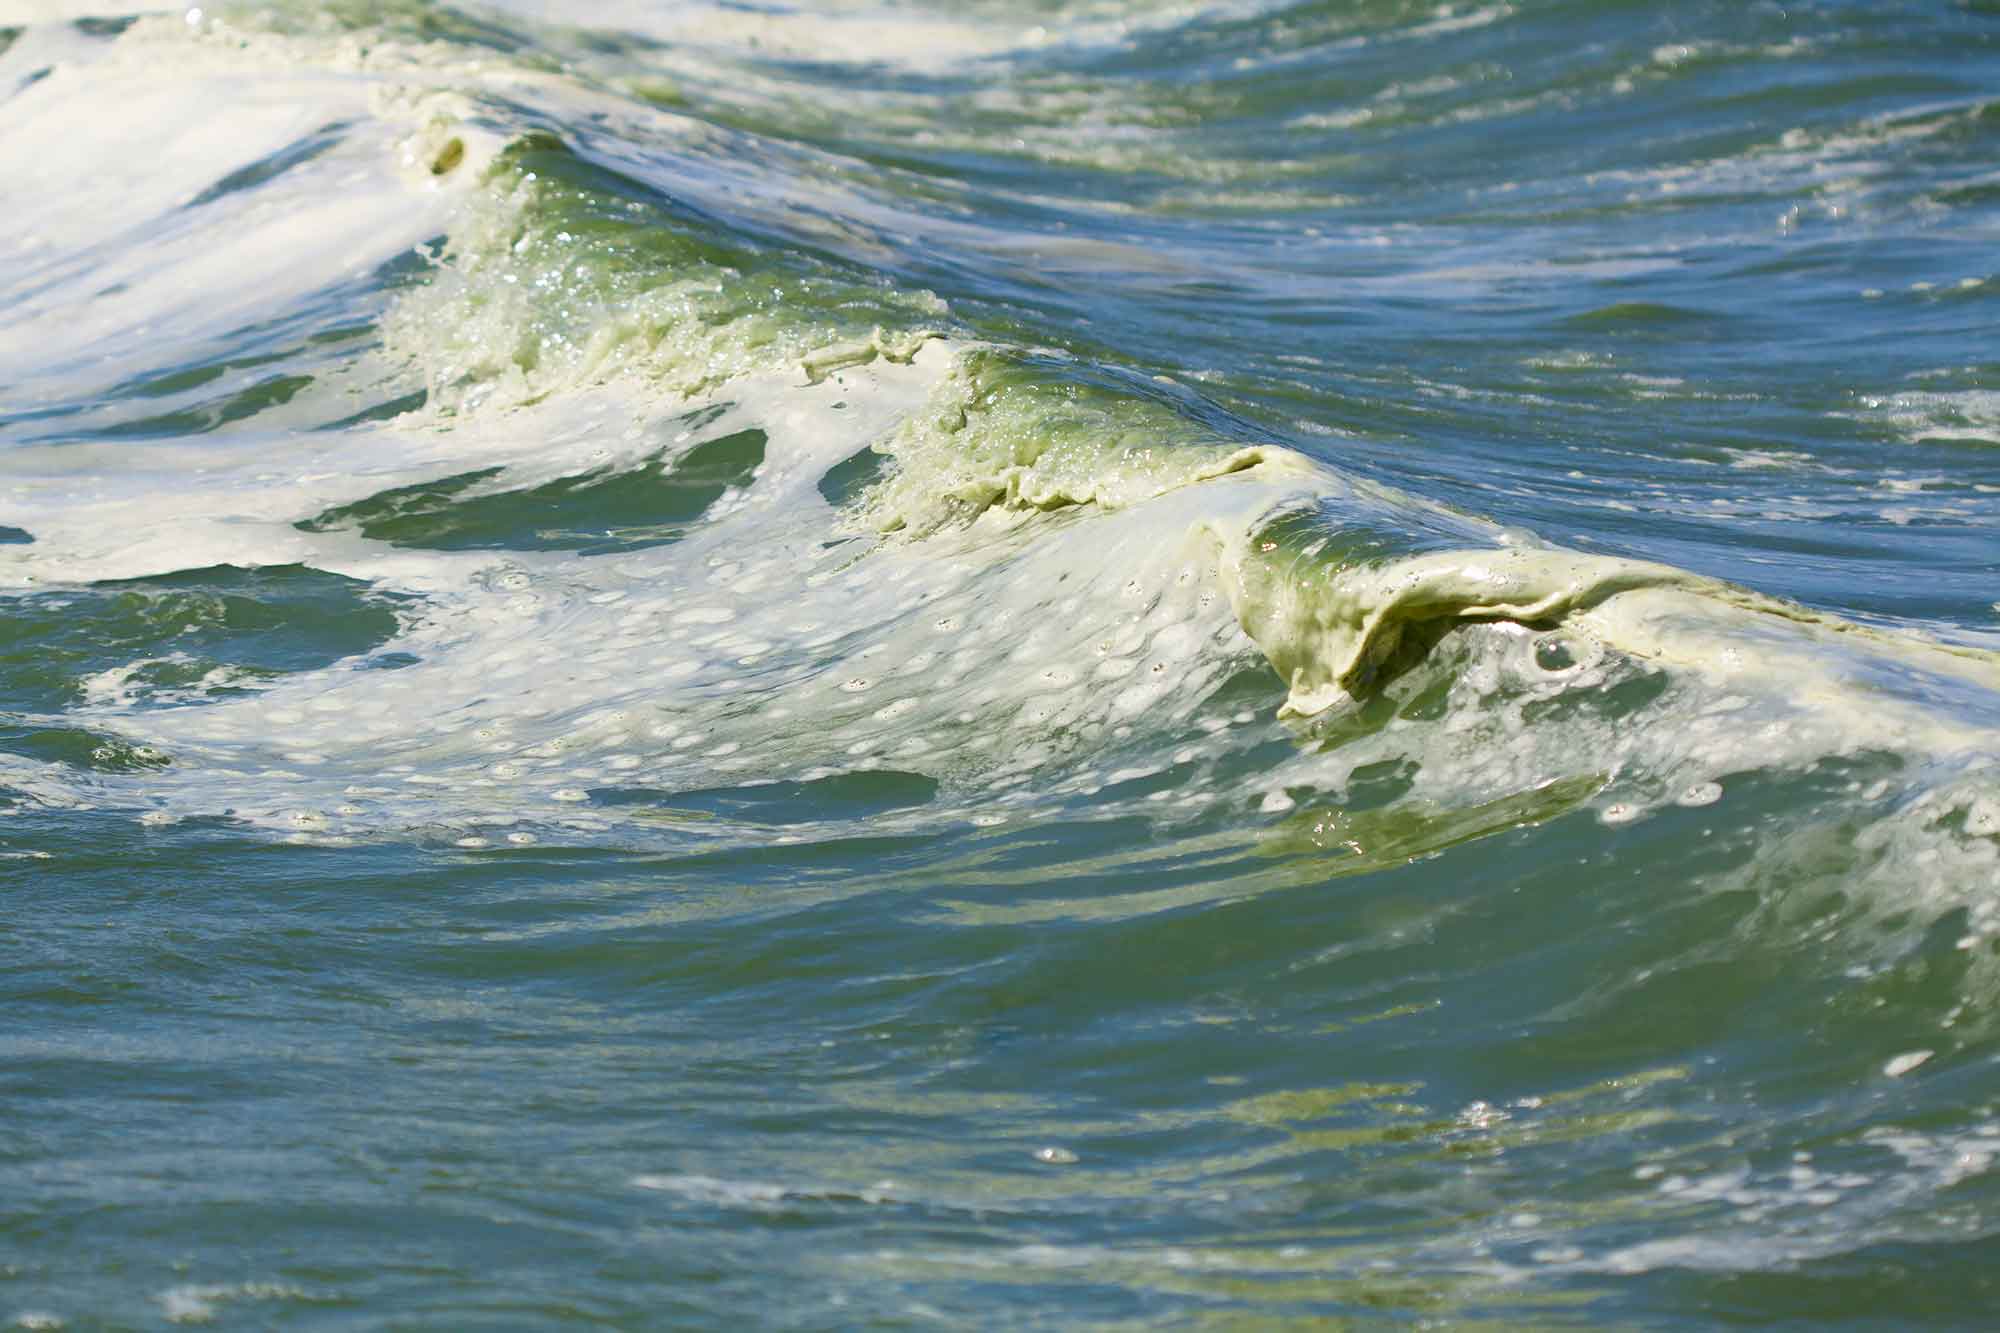 Algae in a wave